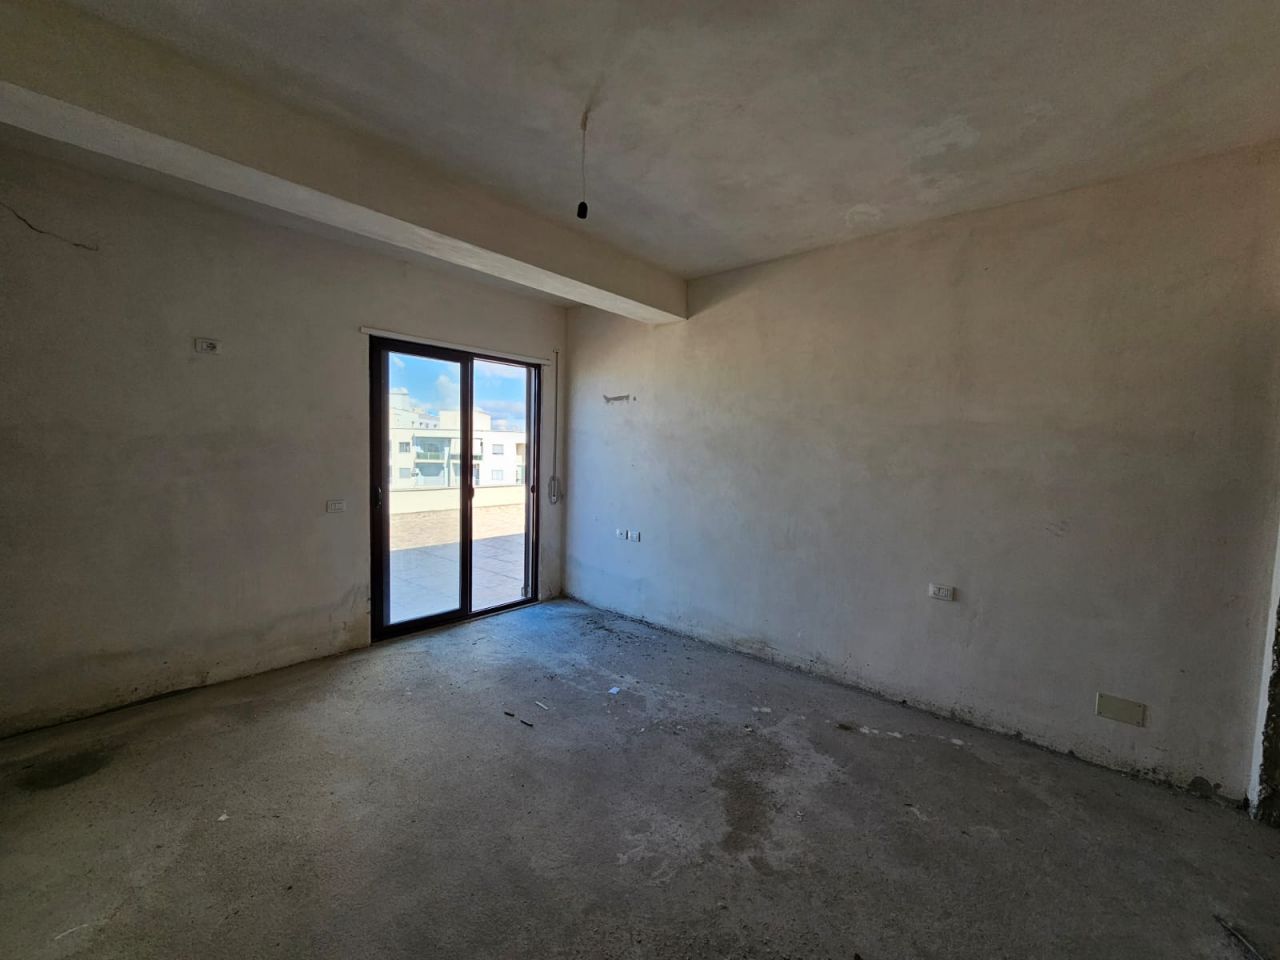 Penthouse Zum Verkauf In Vlore Albanien